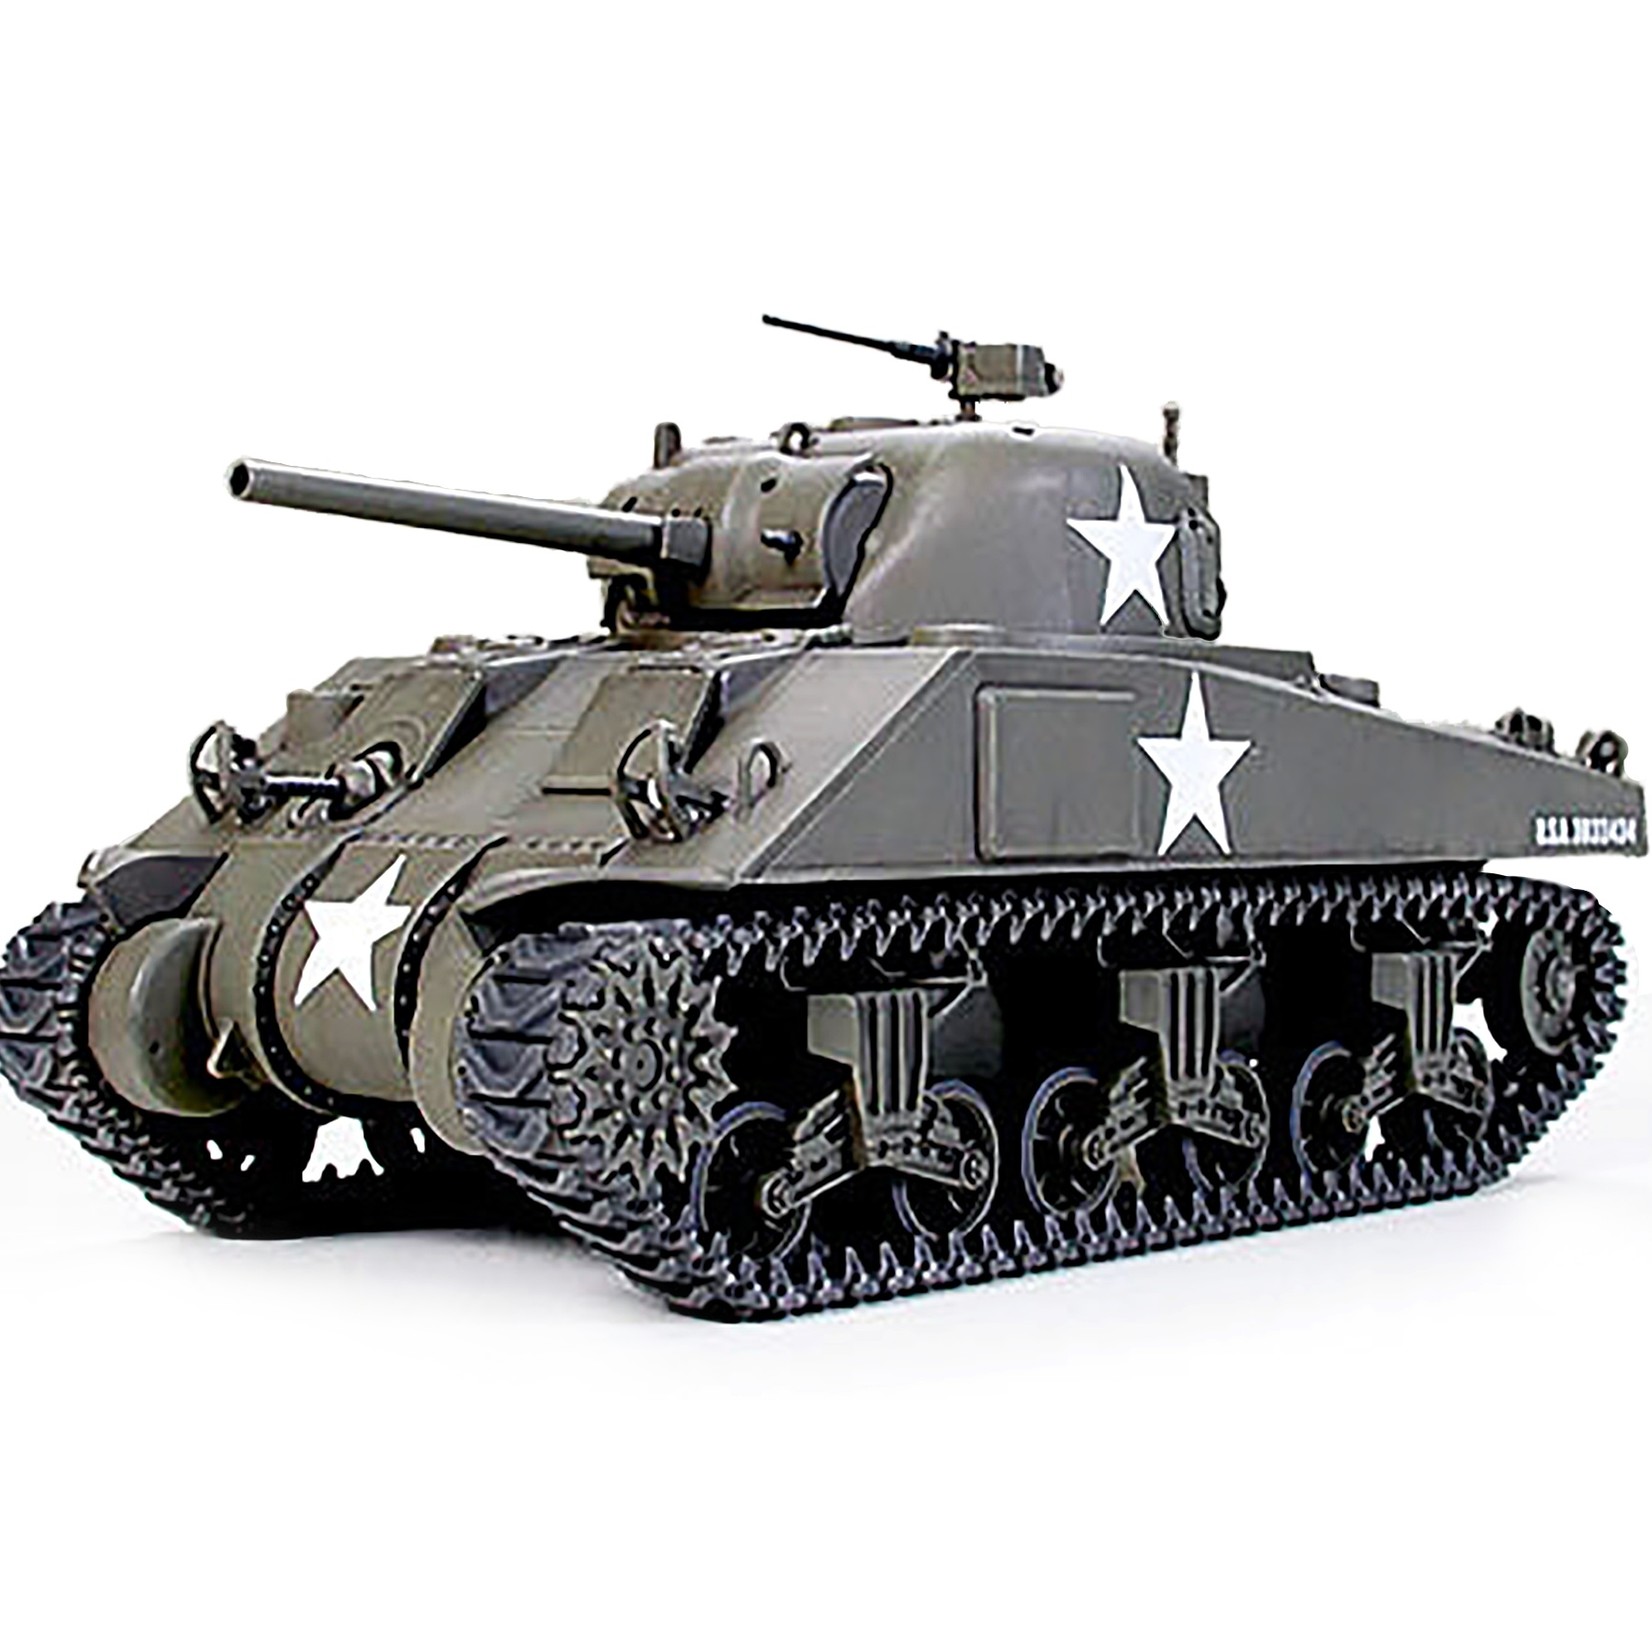 Tamiya TAM32505 - 1/48 U.S. Medium Tank M4 Sherman